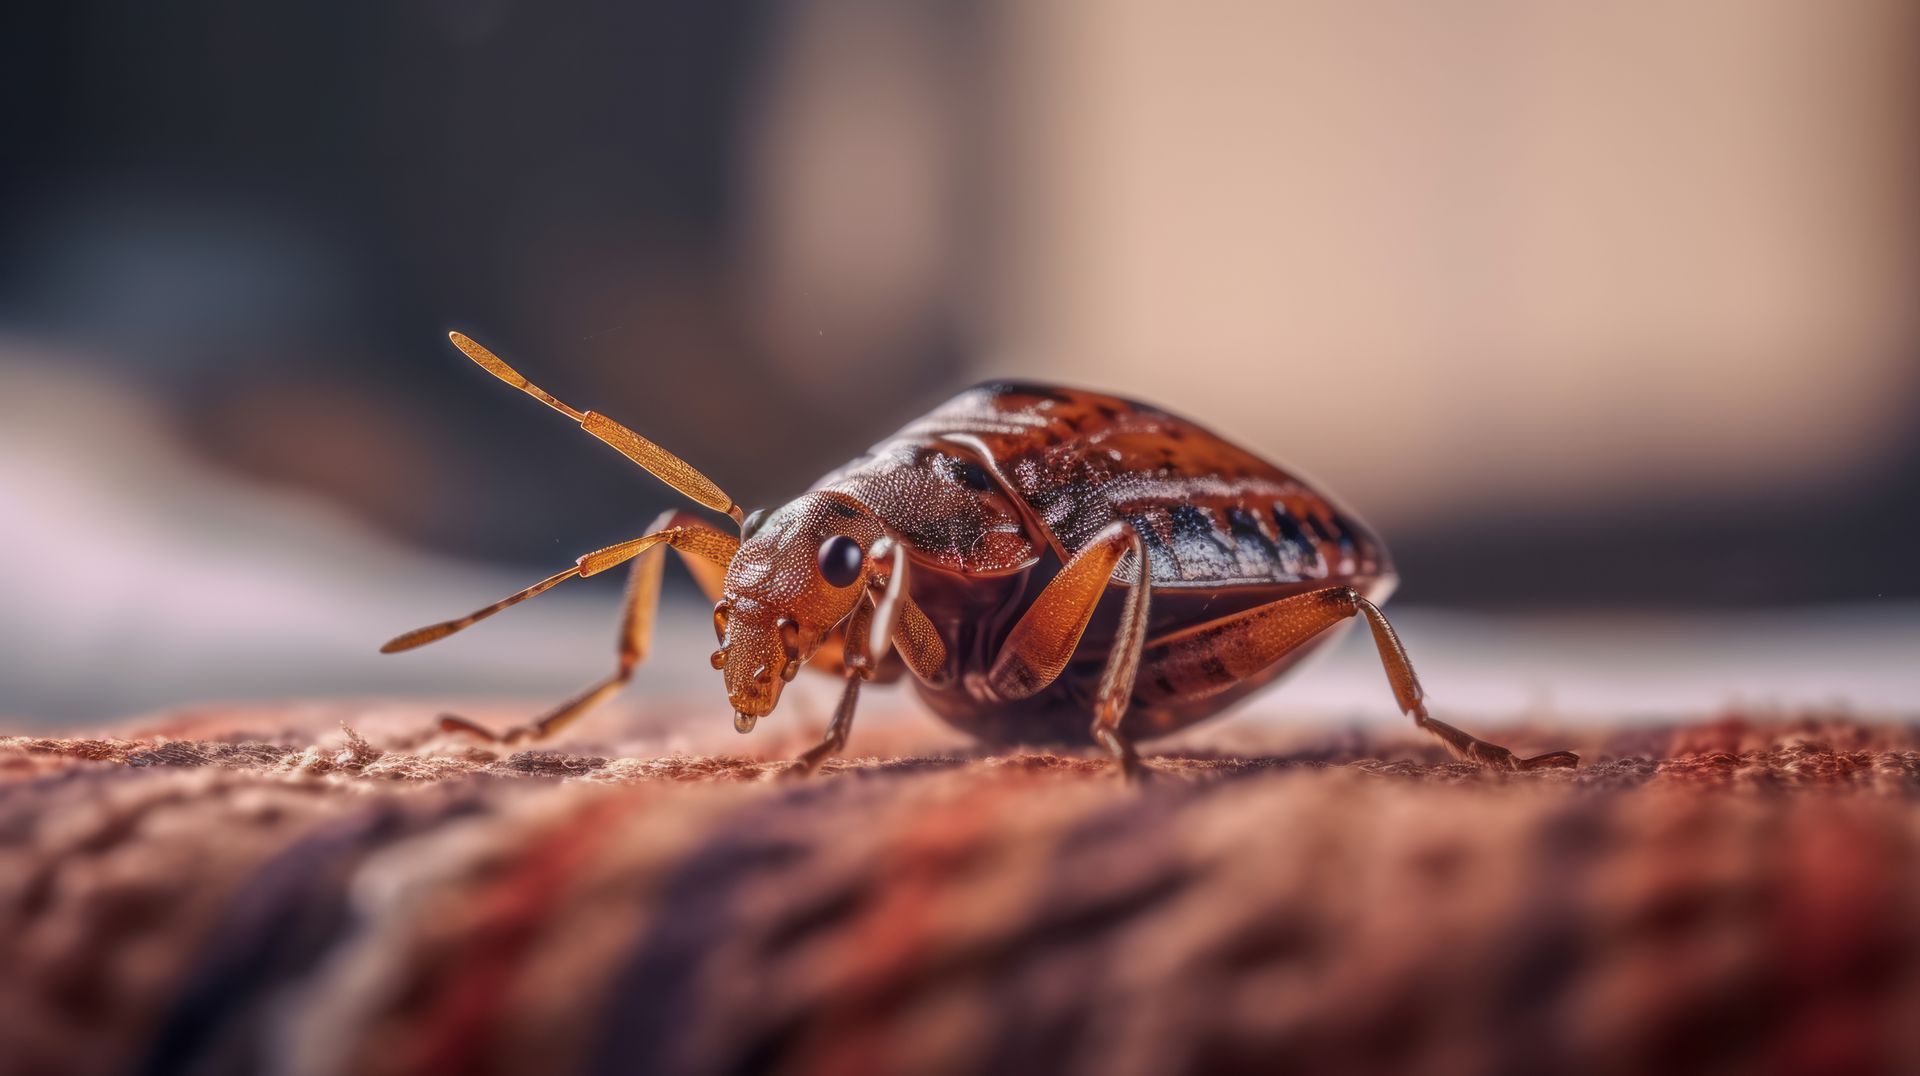 Closeup Look Of A Bed Bug